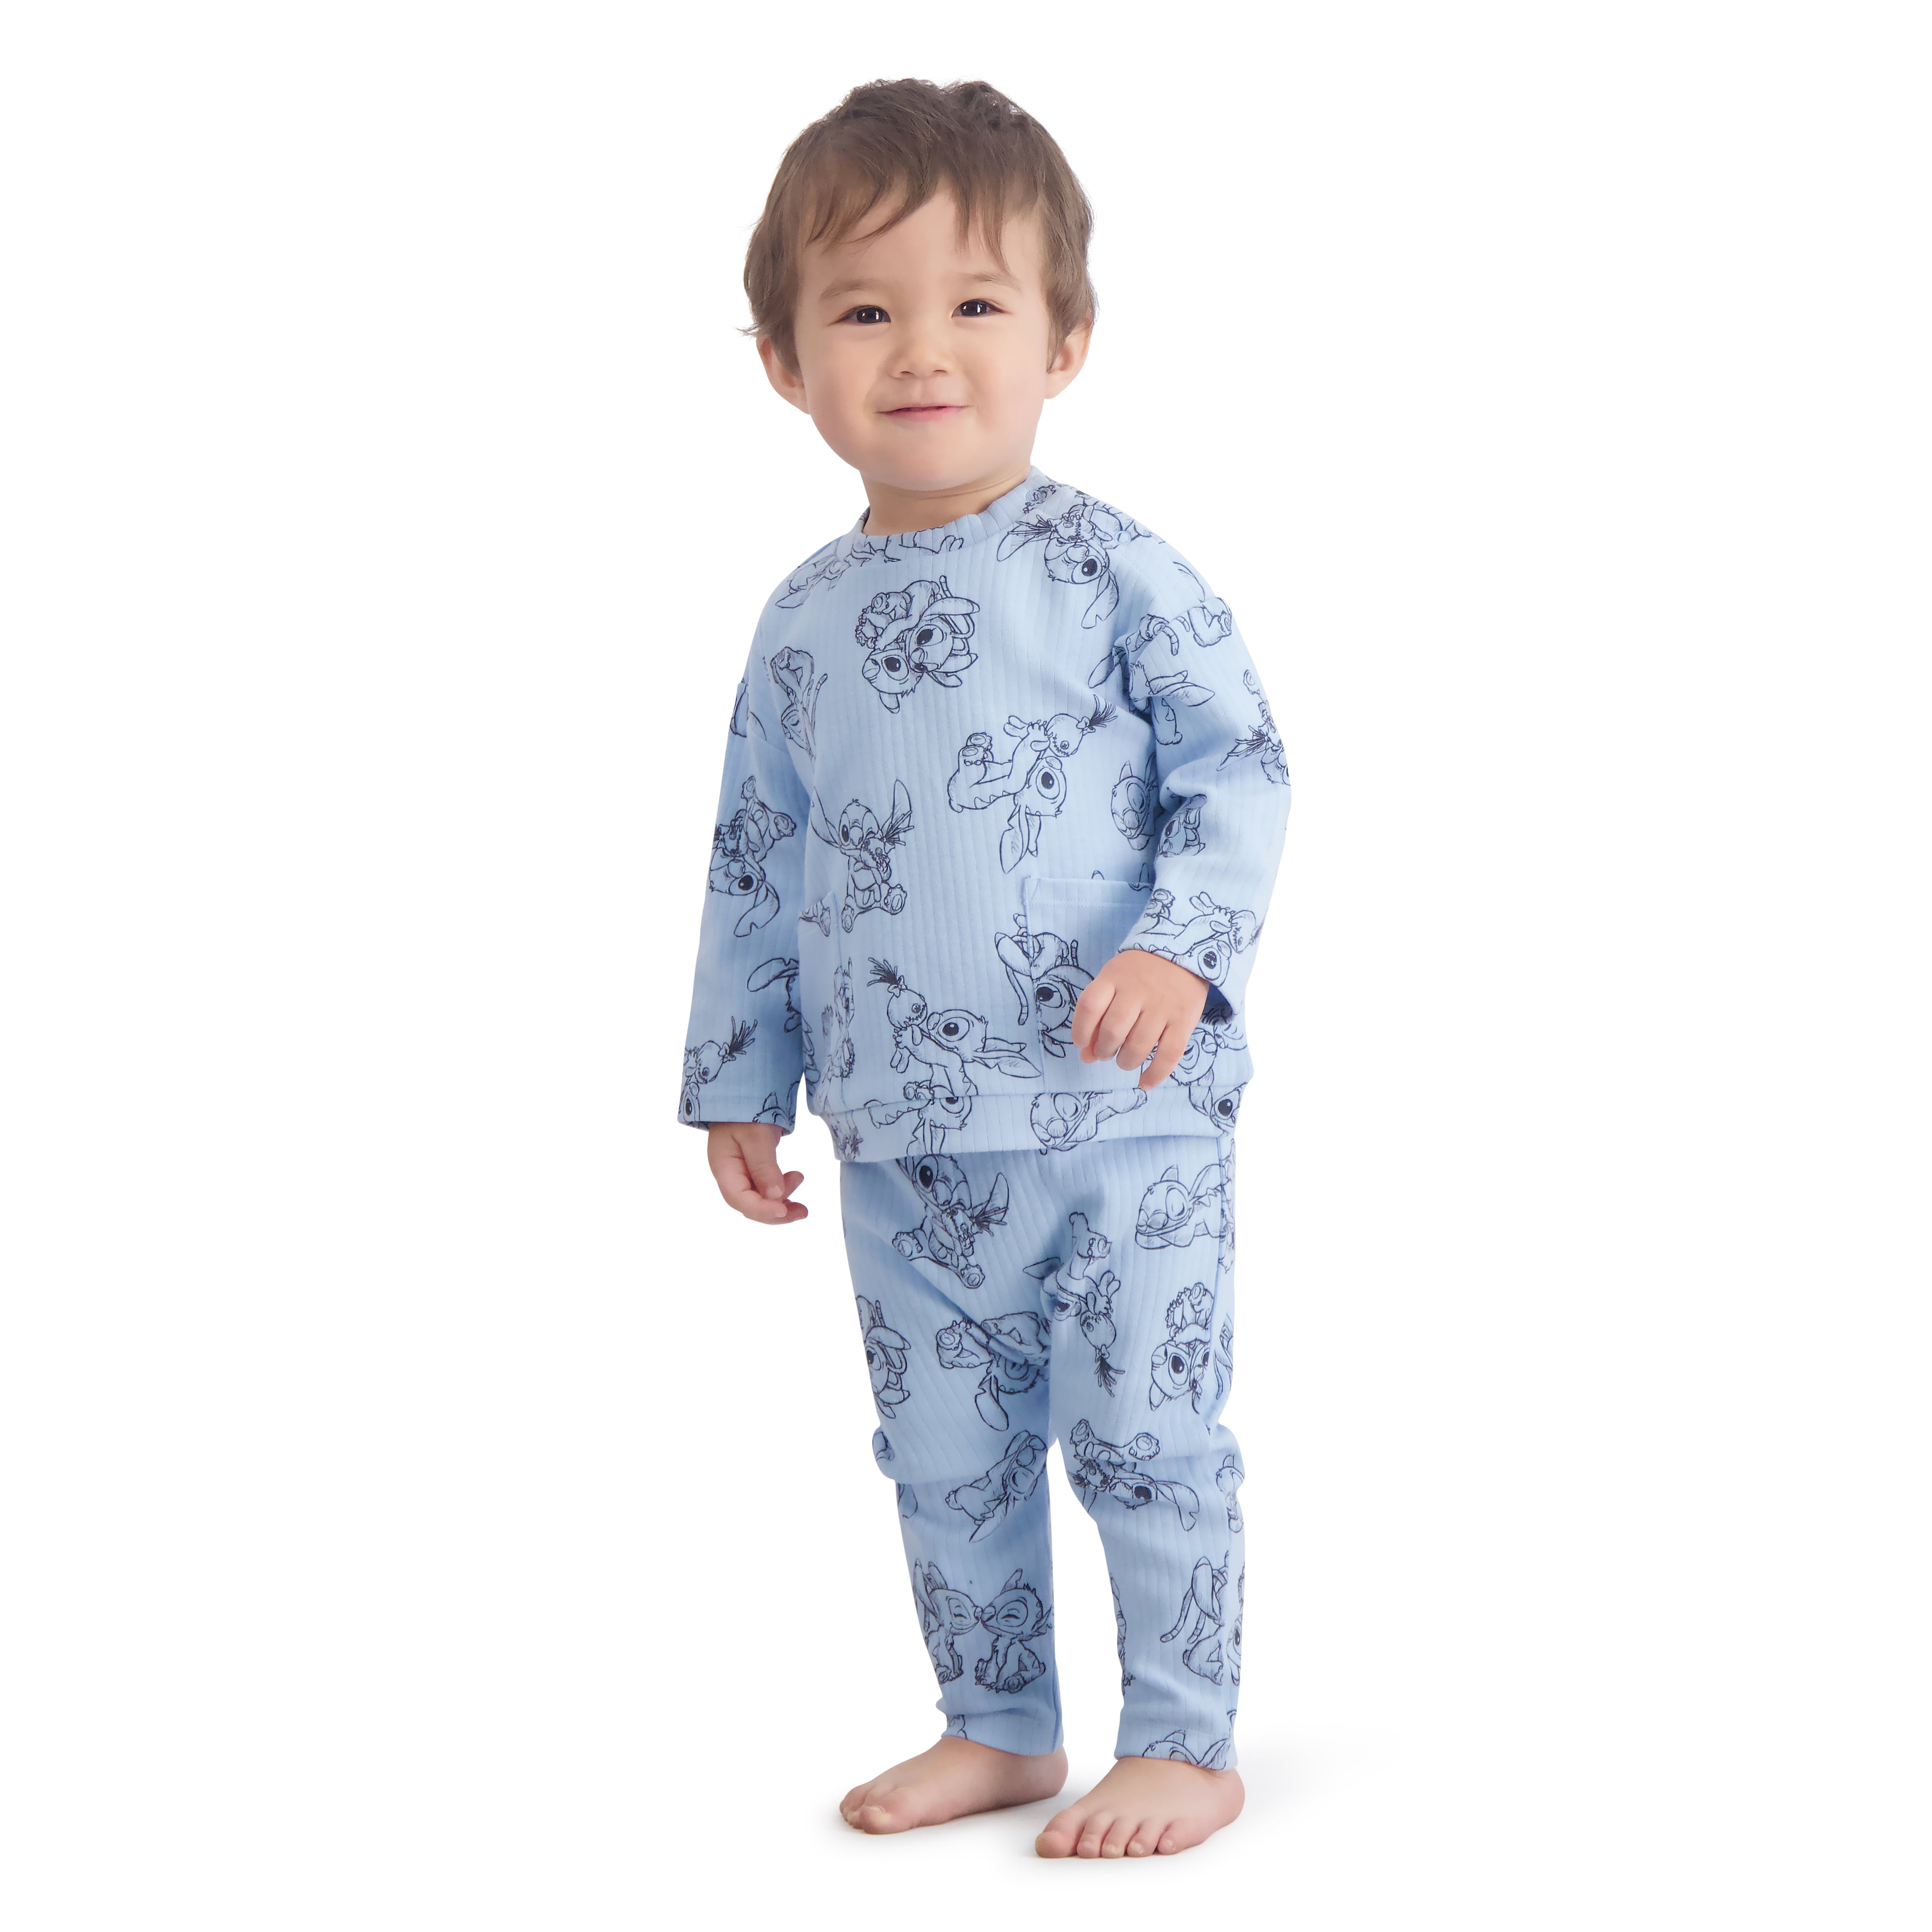 Stitch Baby Boy 2 Piece Pant Set, Sizes 0/3 Months-24 Months, Infant Boy's, Size: 18M, Blue